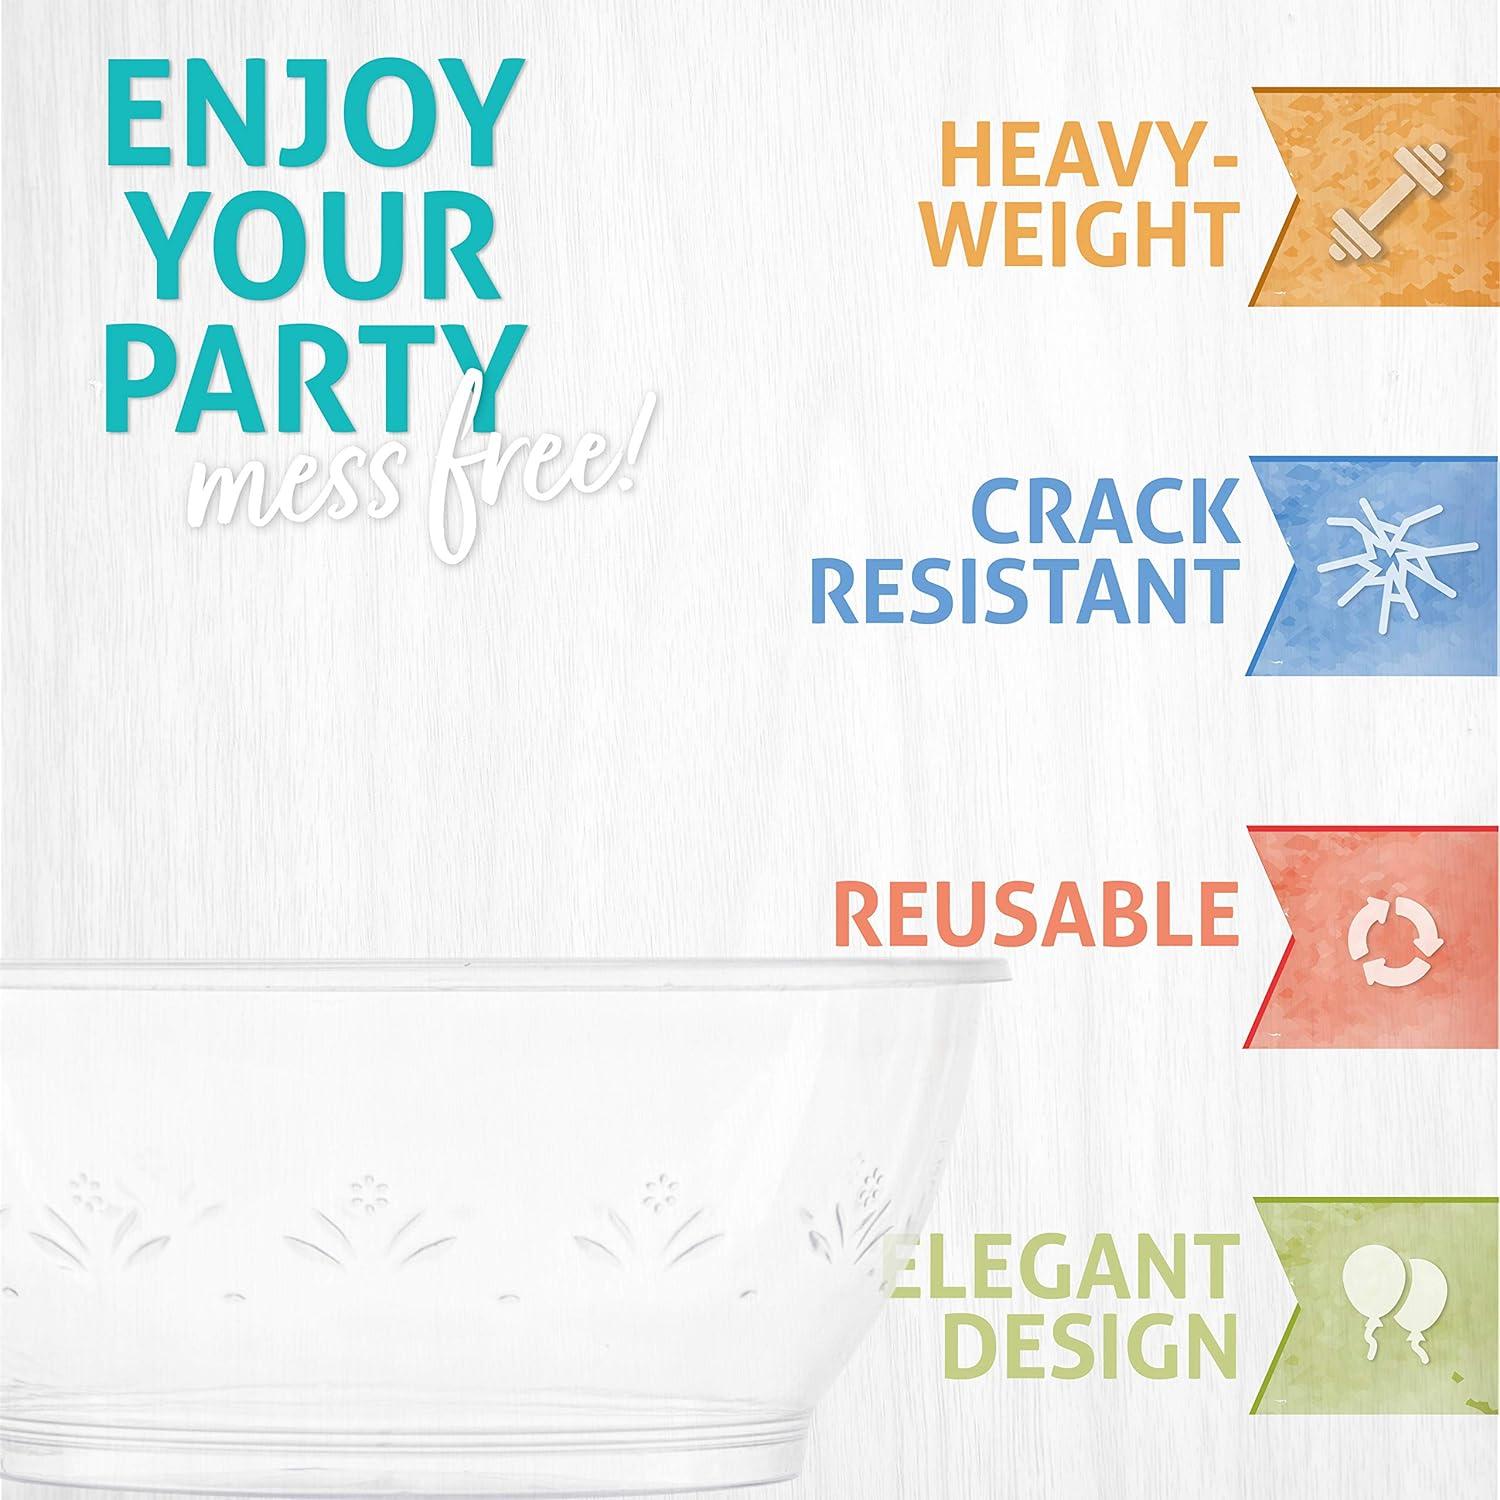 Clear Plastic Bowls - (Bulk 100 Pack) 6 Oz Disposable Premium Hard Pla –